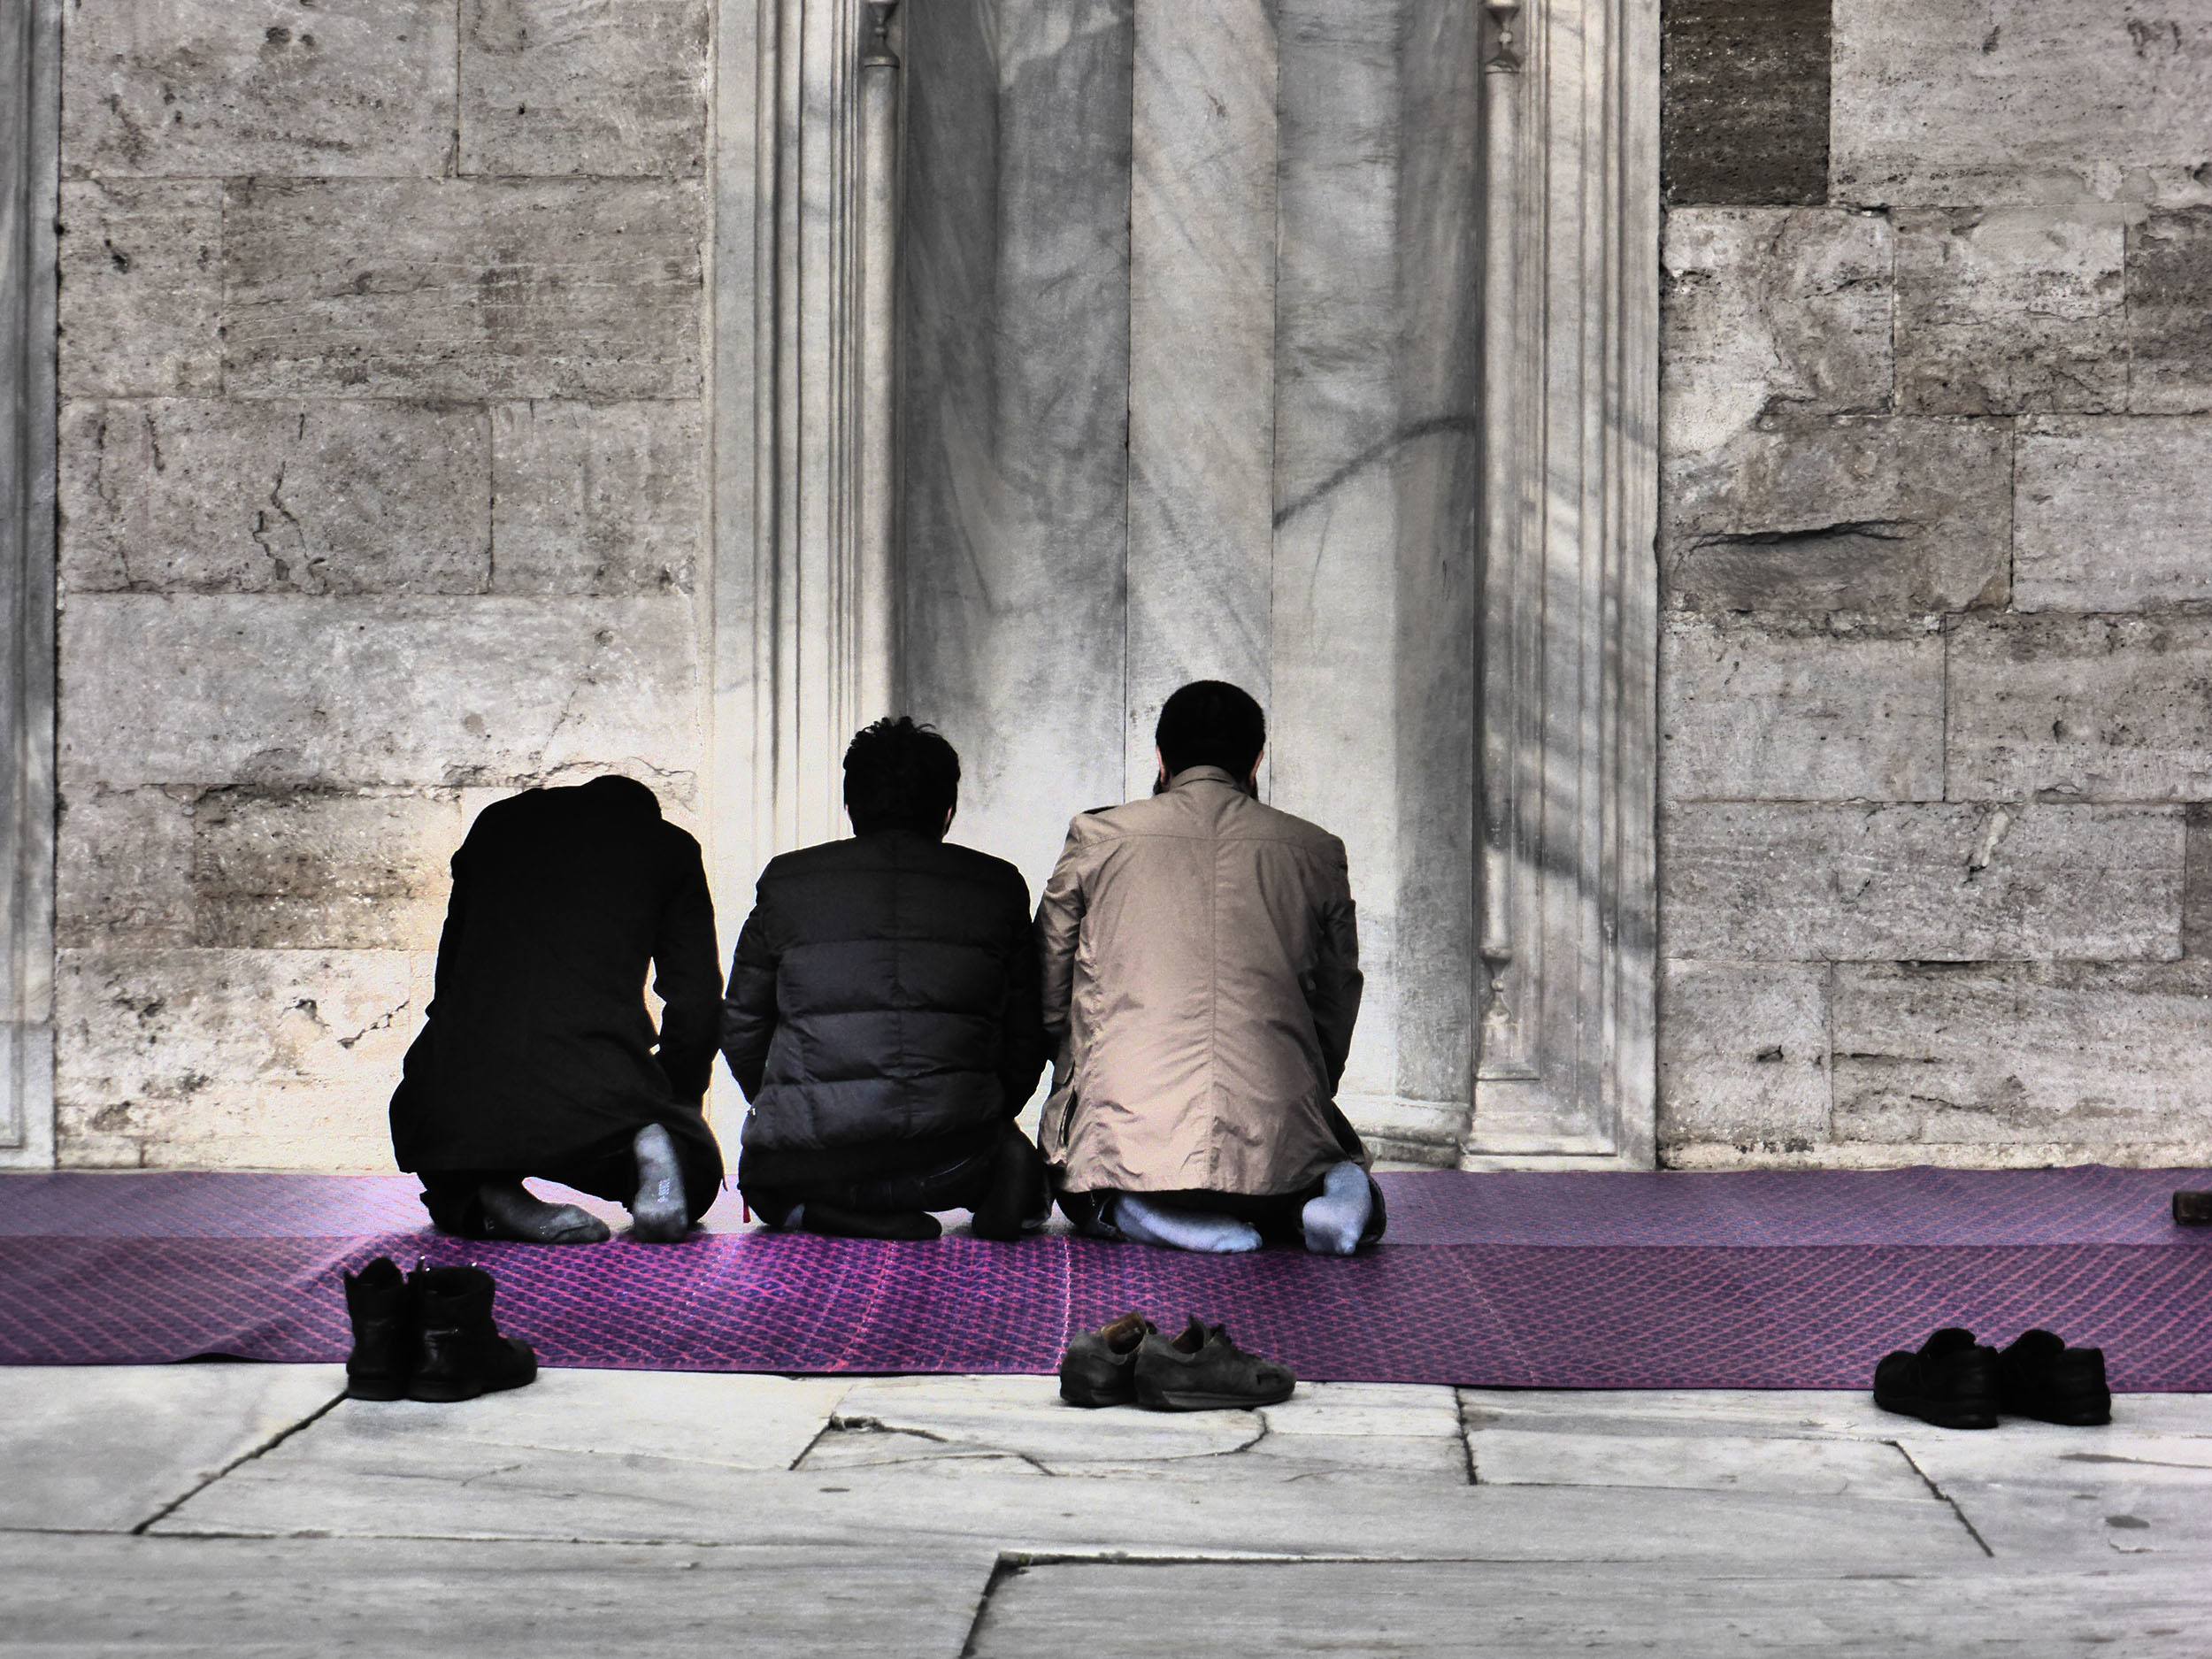 Turkish men kneeling on purple mat outside mosque in Istanbul Turkey